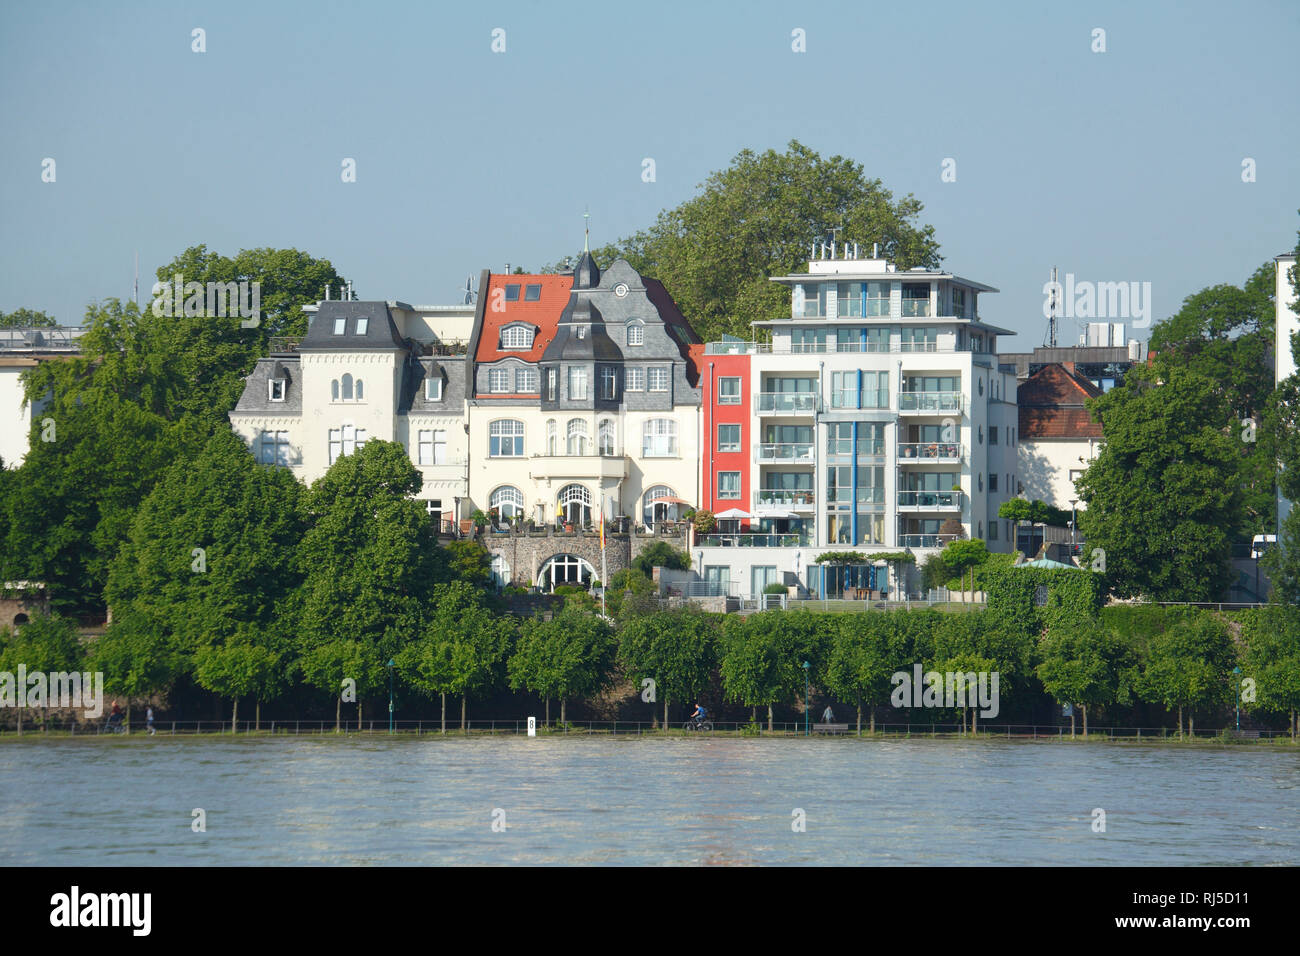 Alte und moderne Häuser, Rheinufer, Rhein, Bonn, Nordrhein-Westfalen, Deutschland, Europa Stockfoto